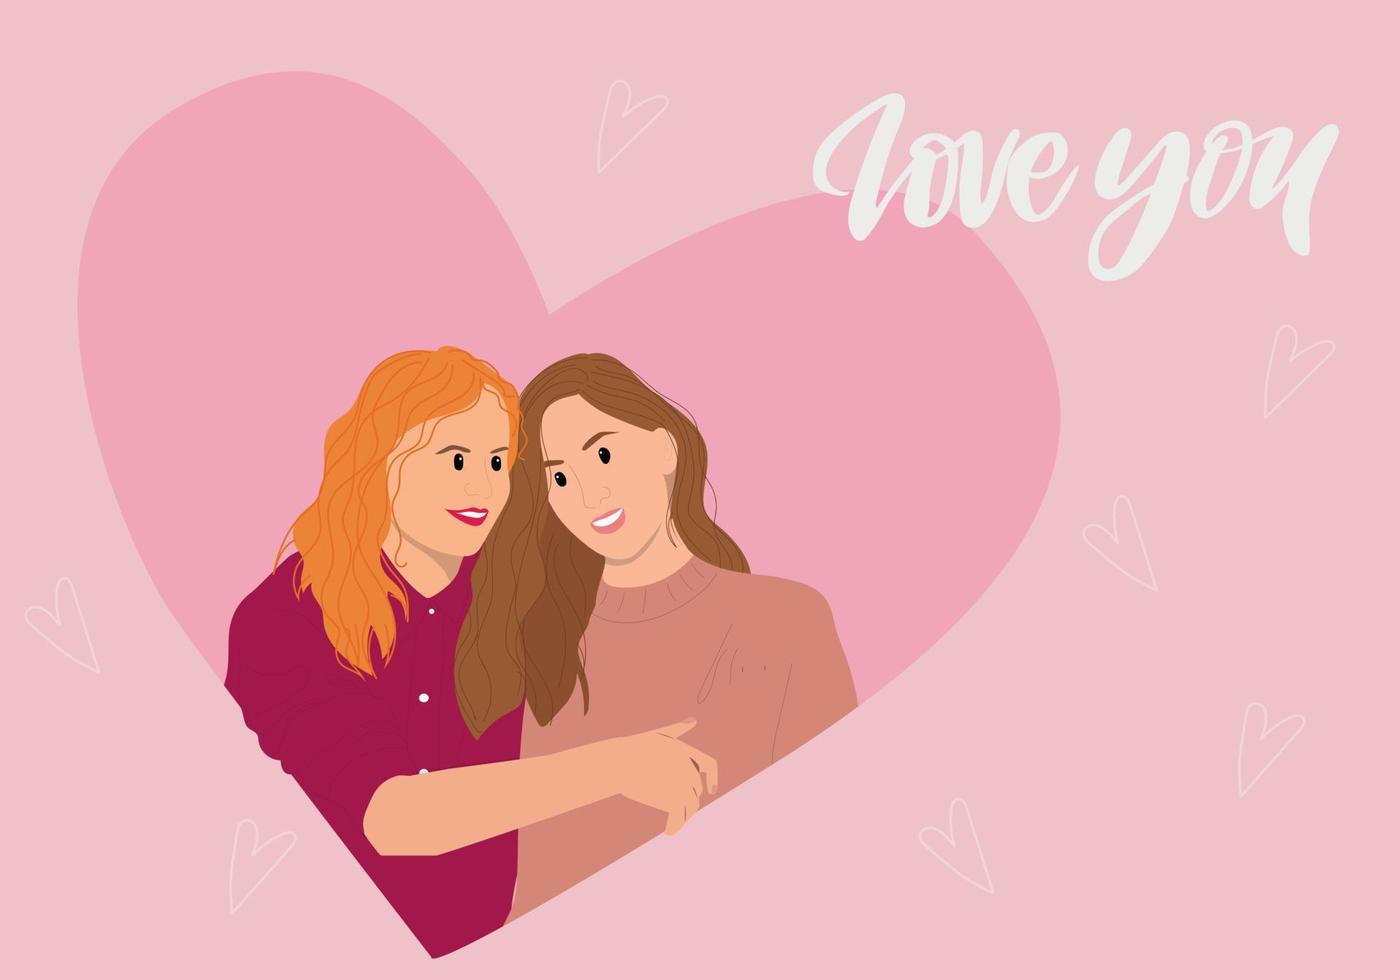 coppia lesbica di san valentino vettore